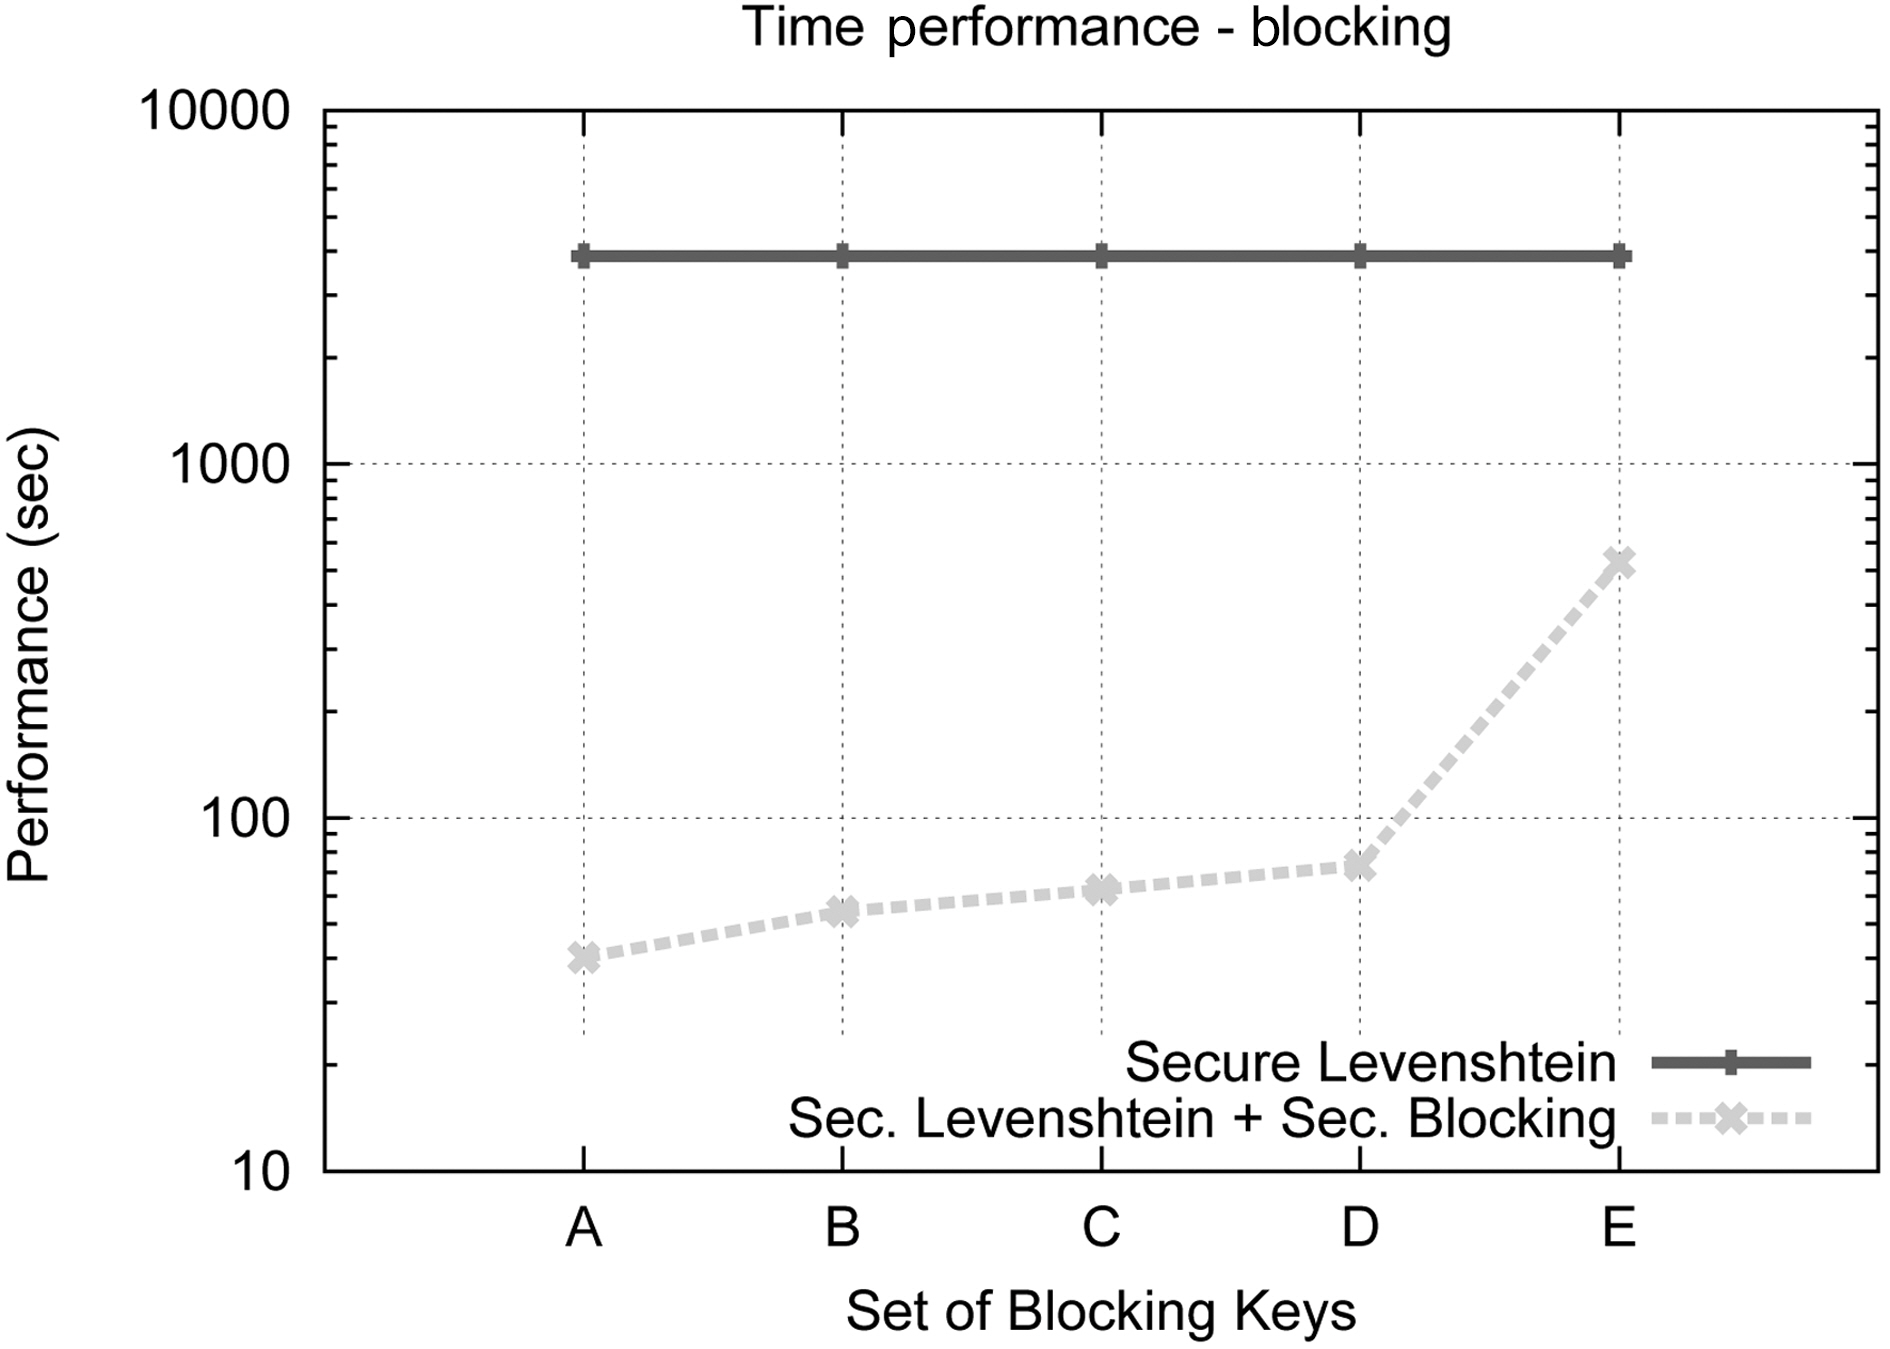 Blocking keys time performance.